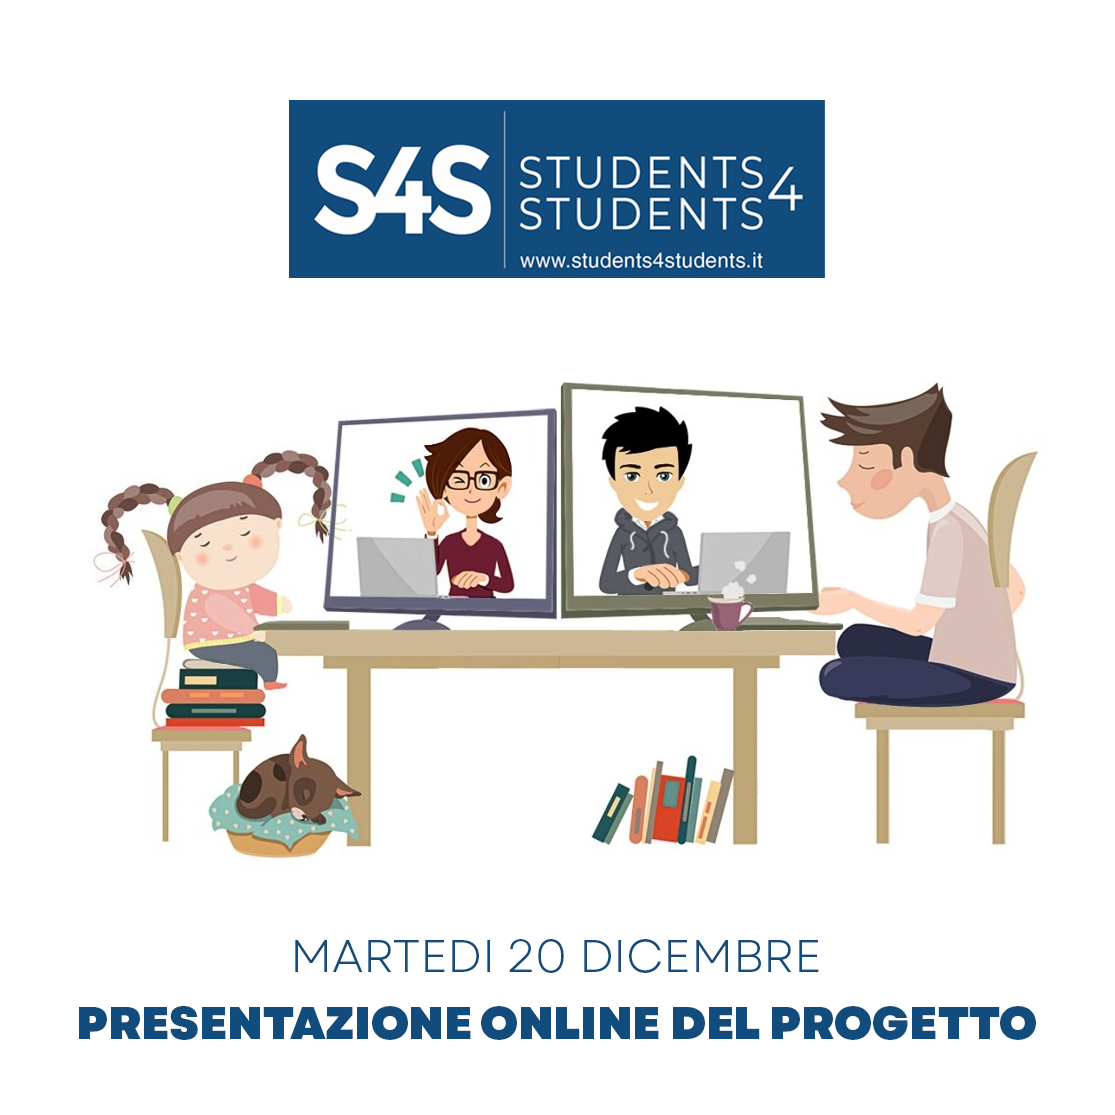 20/12/22 - Presentazione online progetto Students4Students